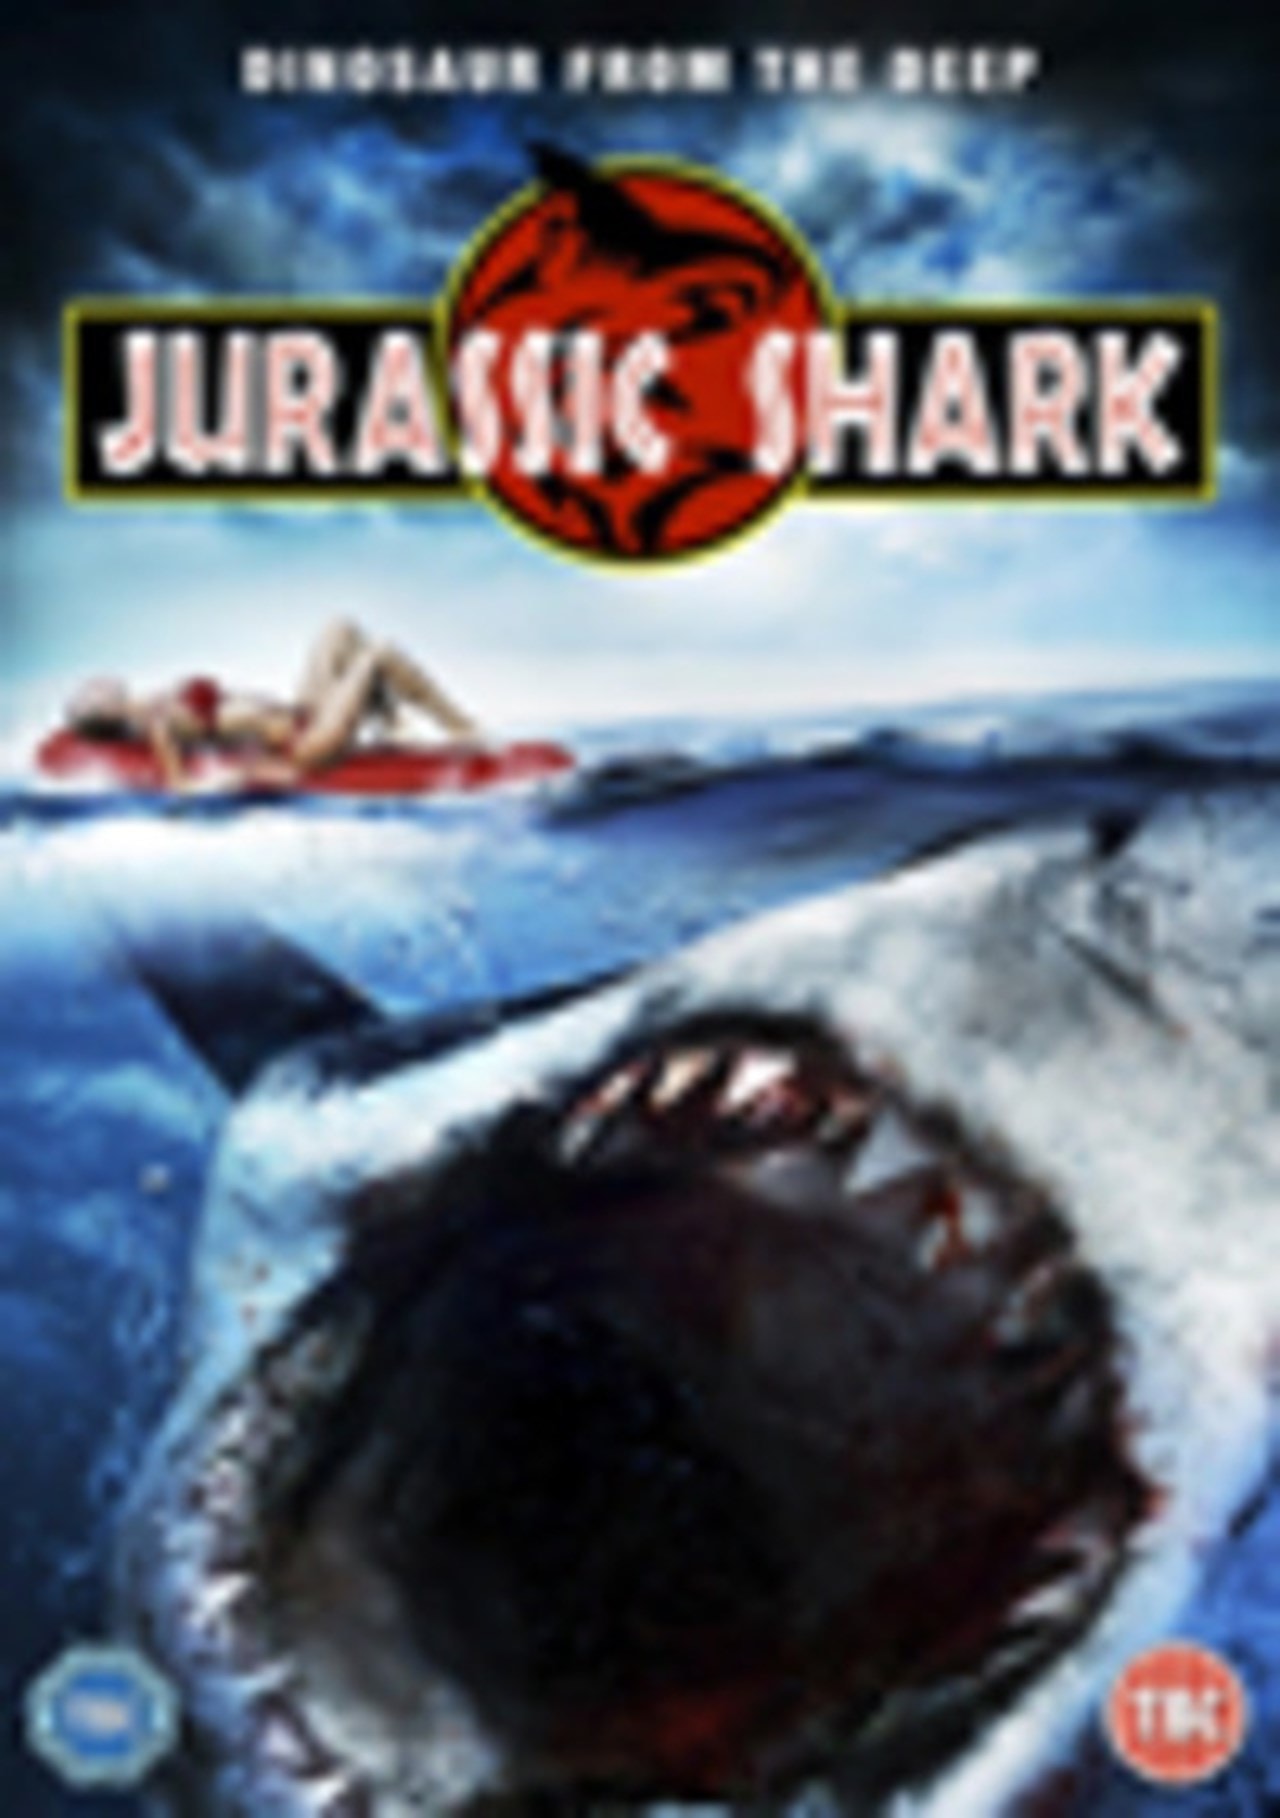 Jurassic Shark | DVD | Free shipping over £20 | HMV Store